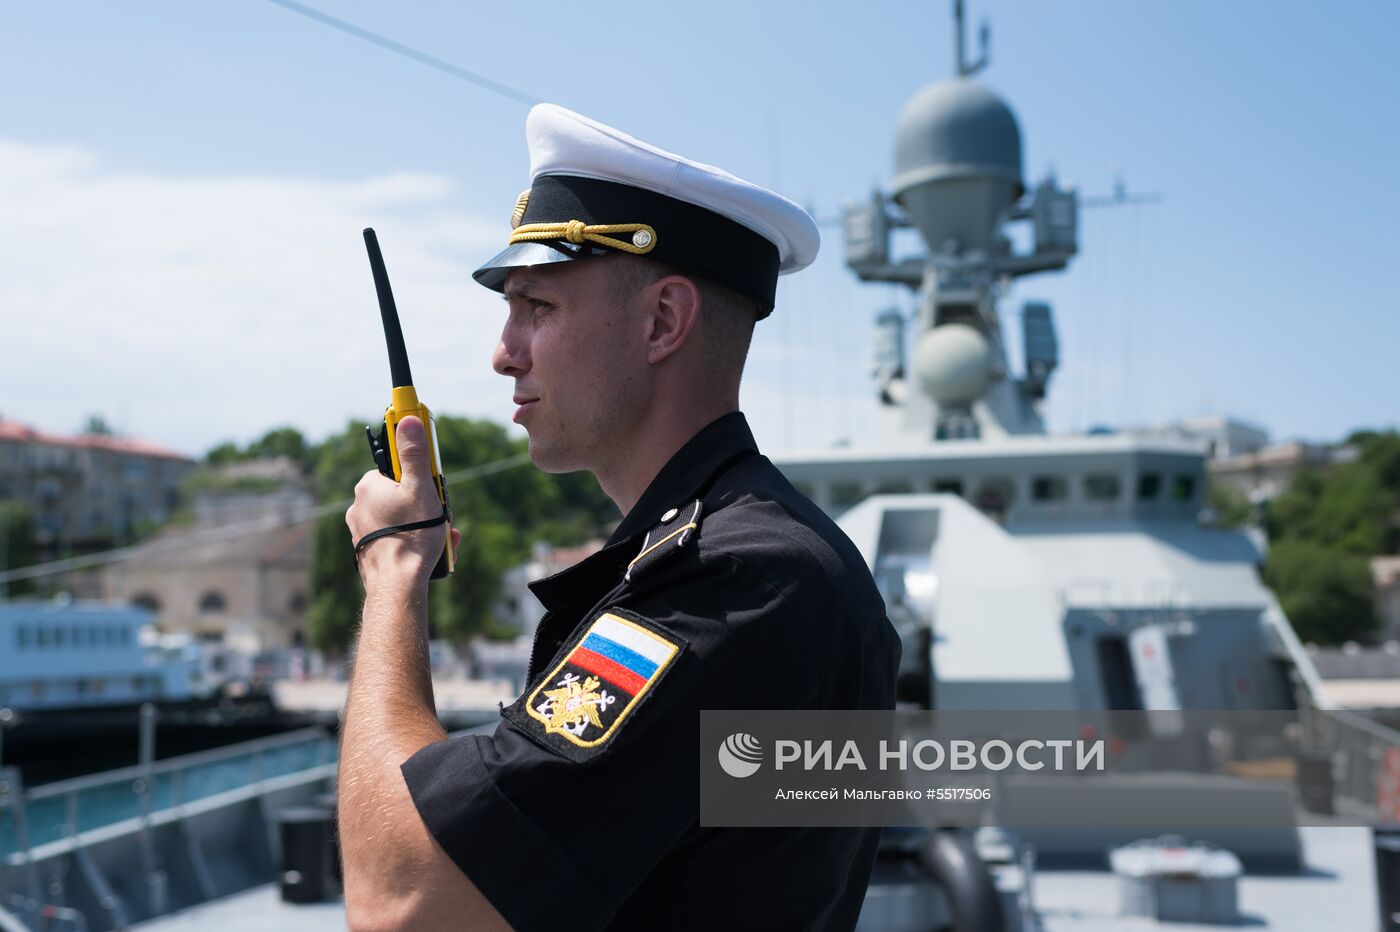 Подъём Андреевского флага на корабле "Вышний Волочек" в Севастополе